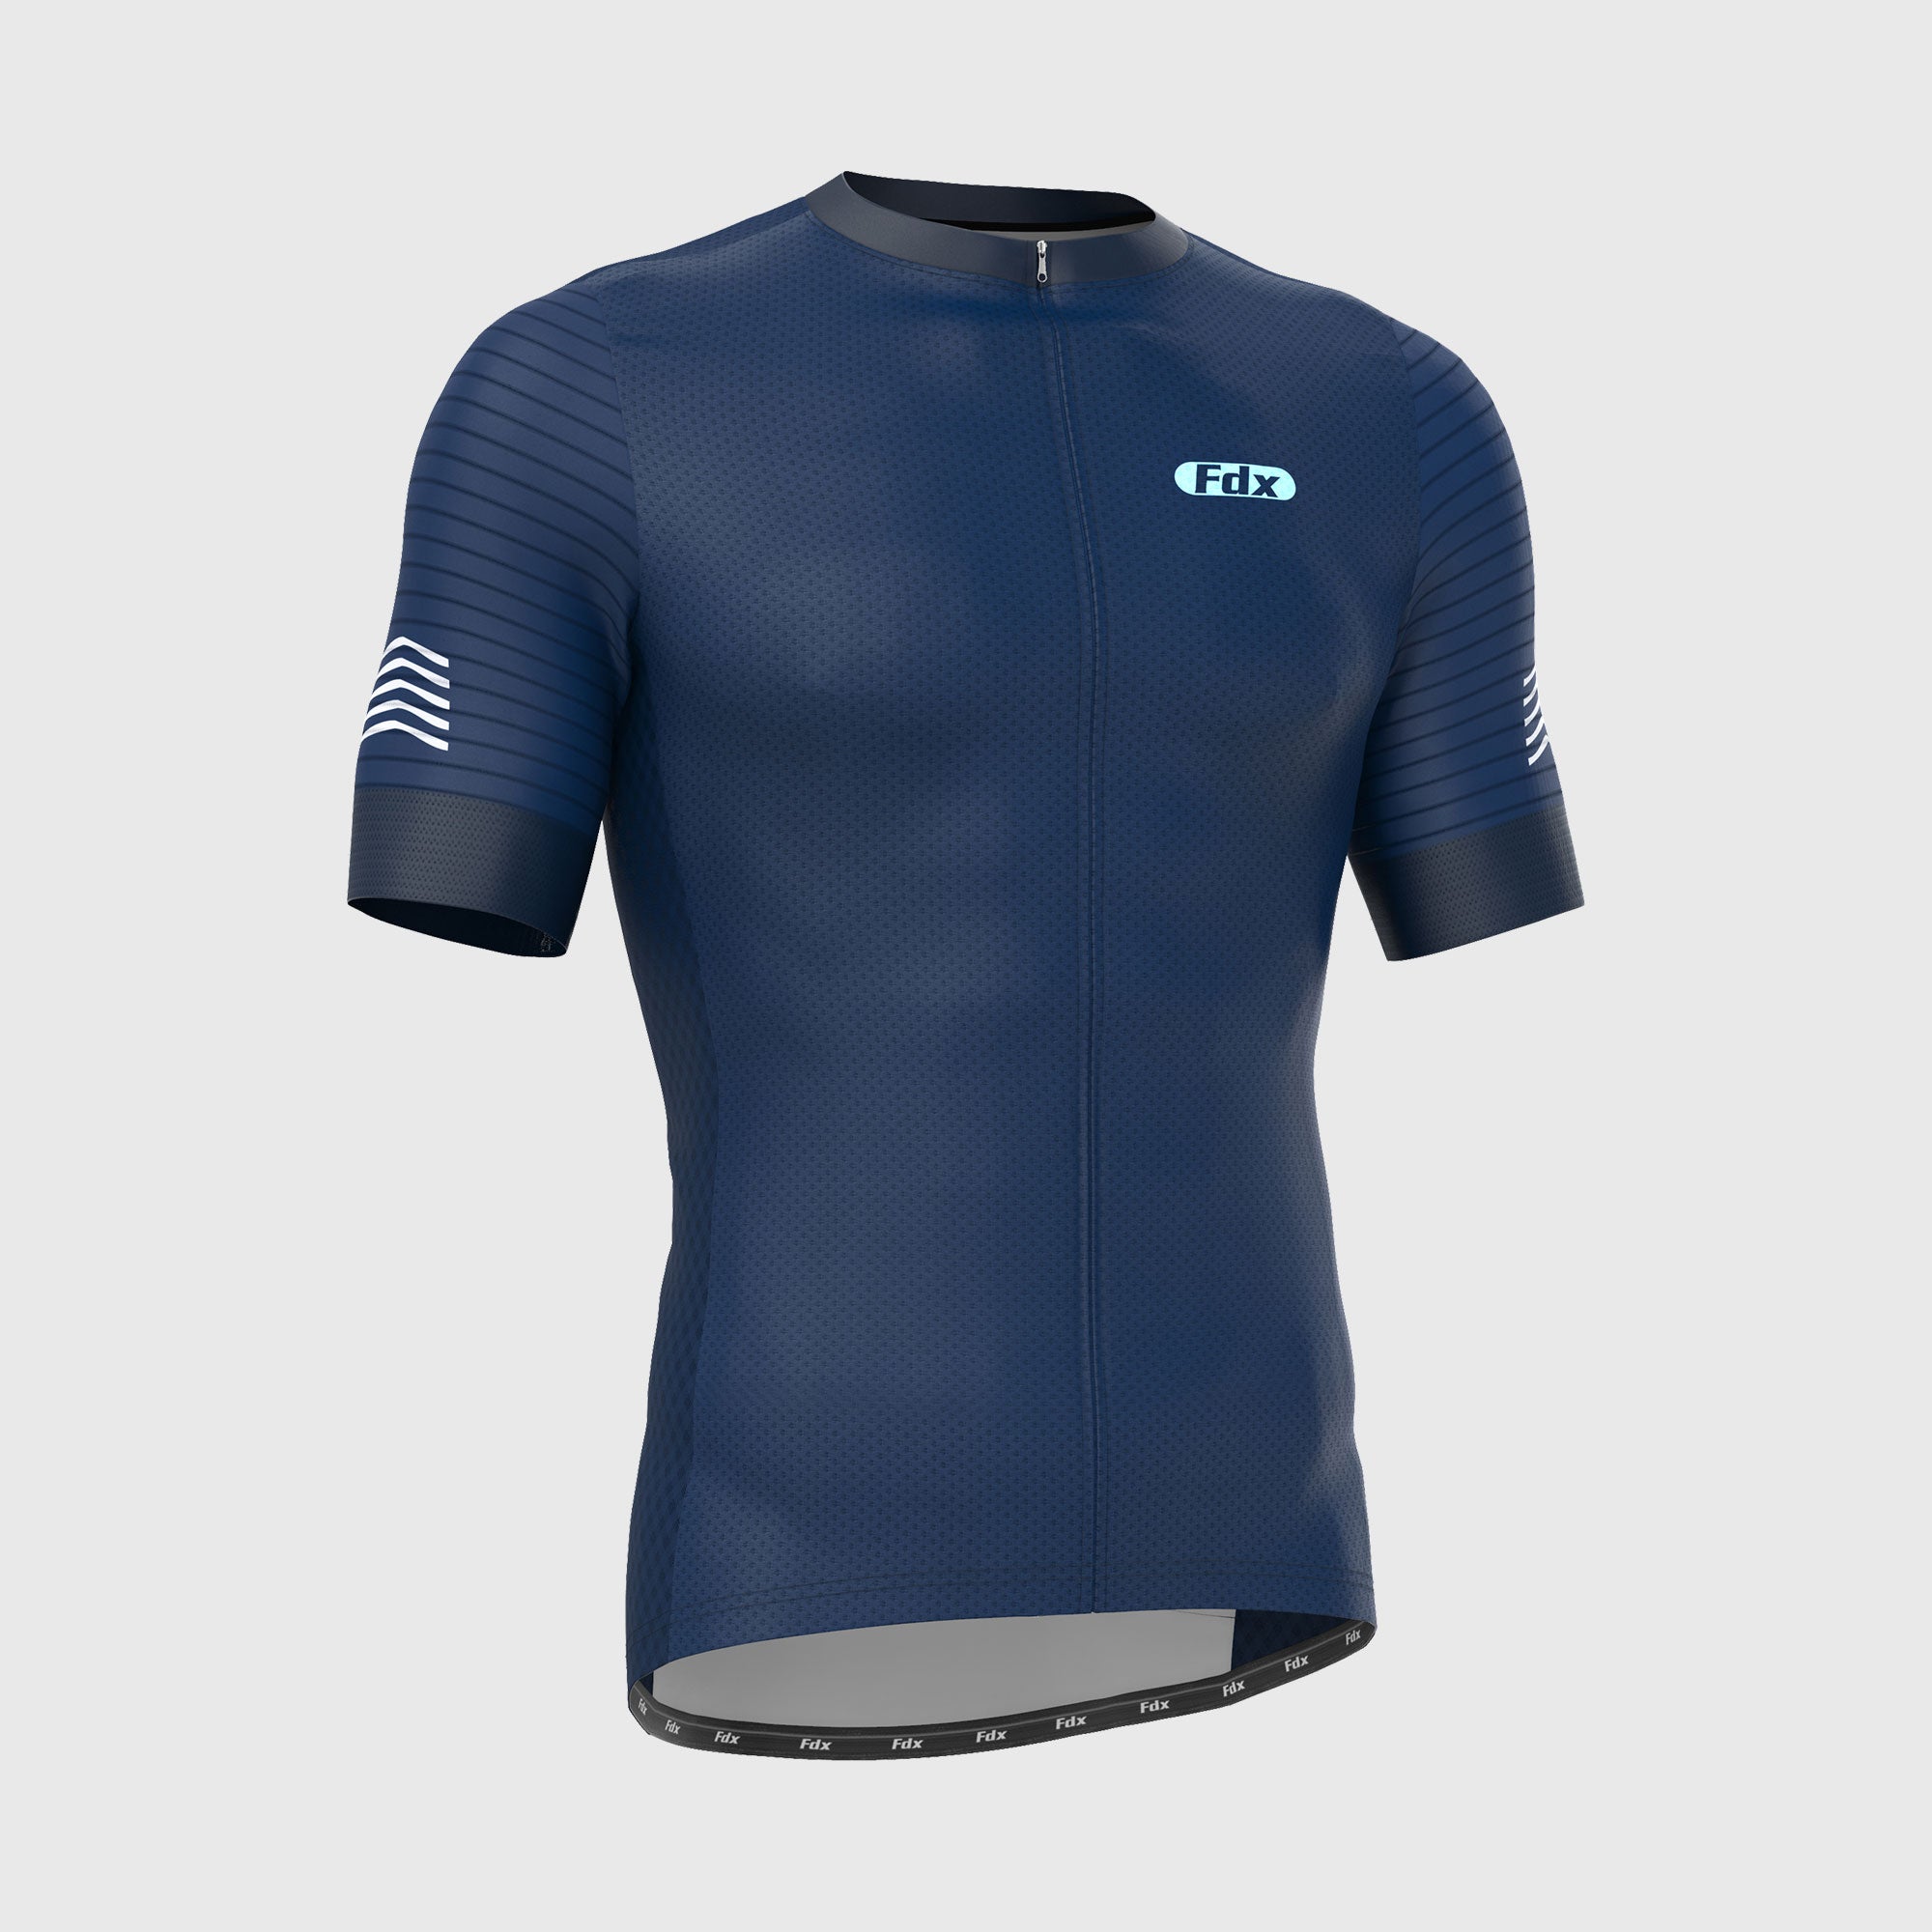 Fdx Essential Blue Men's Short Sleeve Summer Cycling Jersey